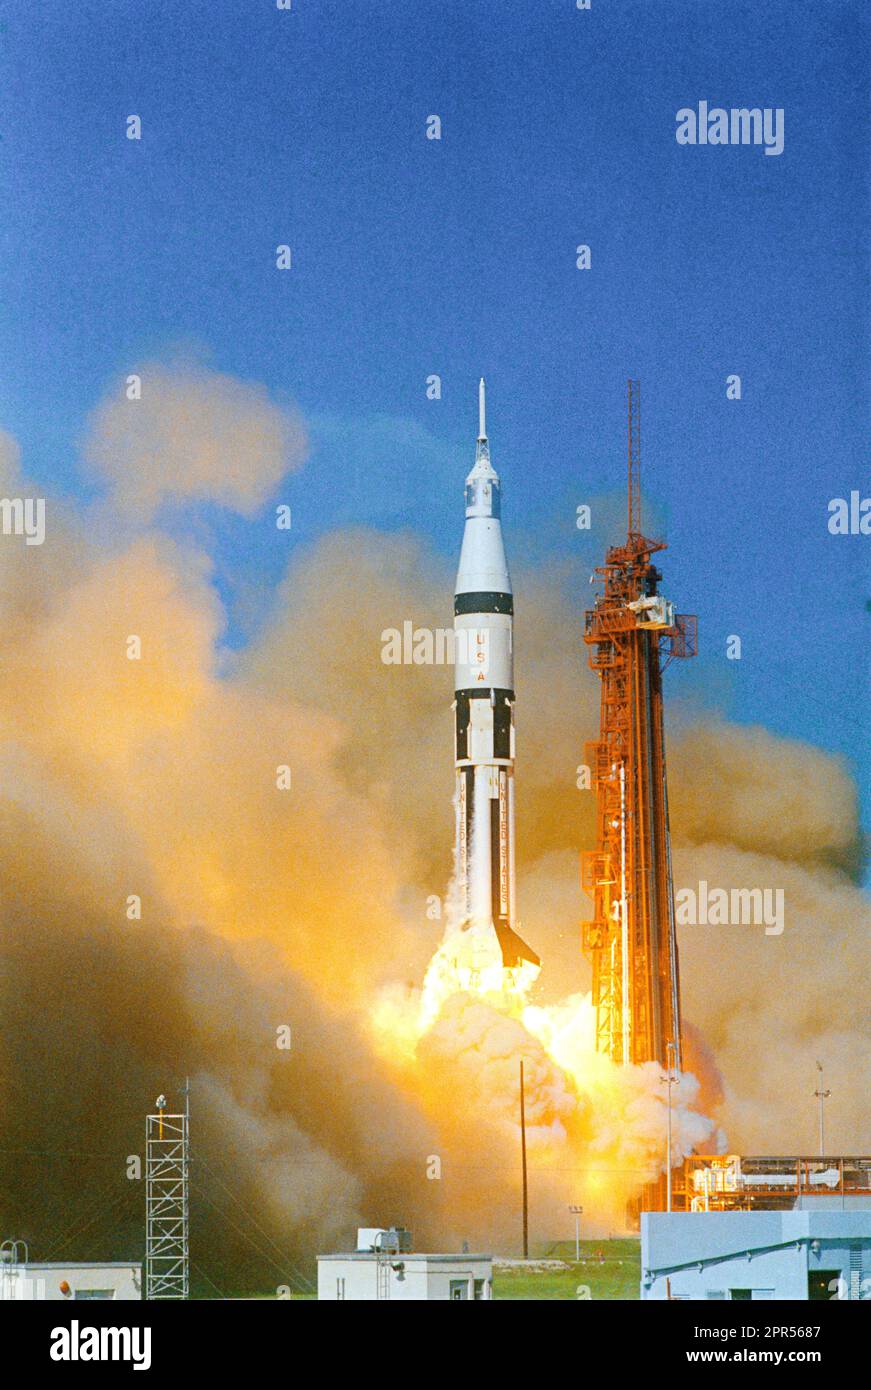 Apollo 7 startet vom Cape Kennedy Launch Complex 34 um 11:03 UHR, Eastern Daylight Time. Die Astronauten an Bord, für die erste Apollo-Mission, waren Walter M. Schirra Jr., Commander, Donn F. Eisele, Pilot des Kommandomoduls, und Walter Cunningham, Lunar-Modul-Pilot. Stockfoto